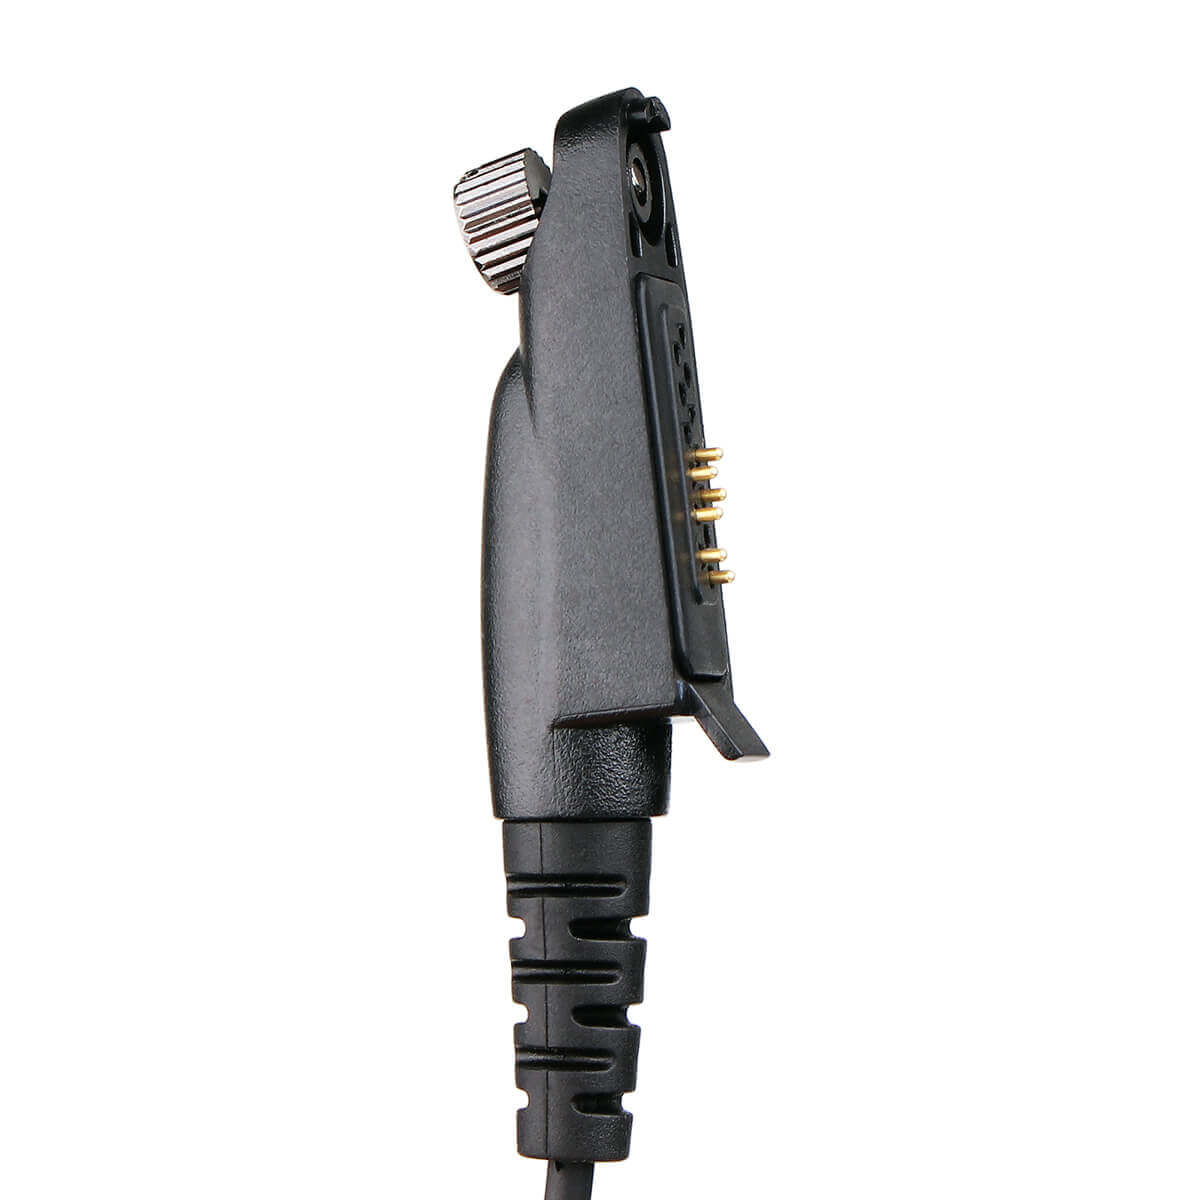 Ailunce HD1 Connector Plug